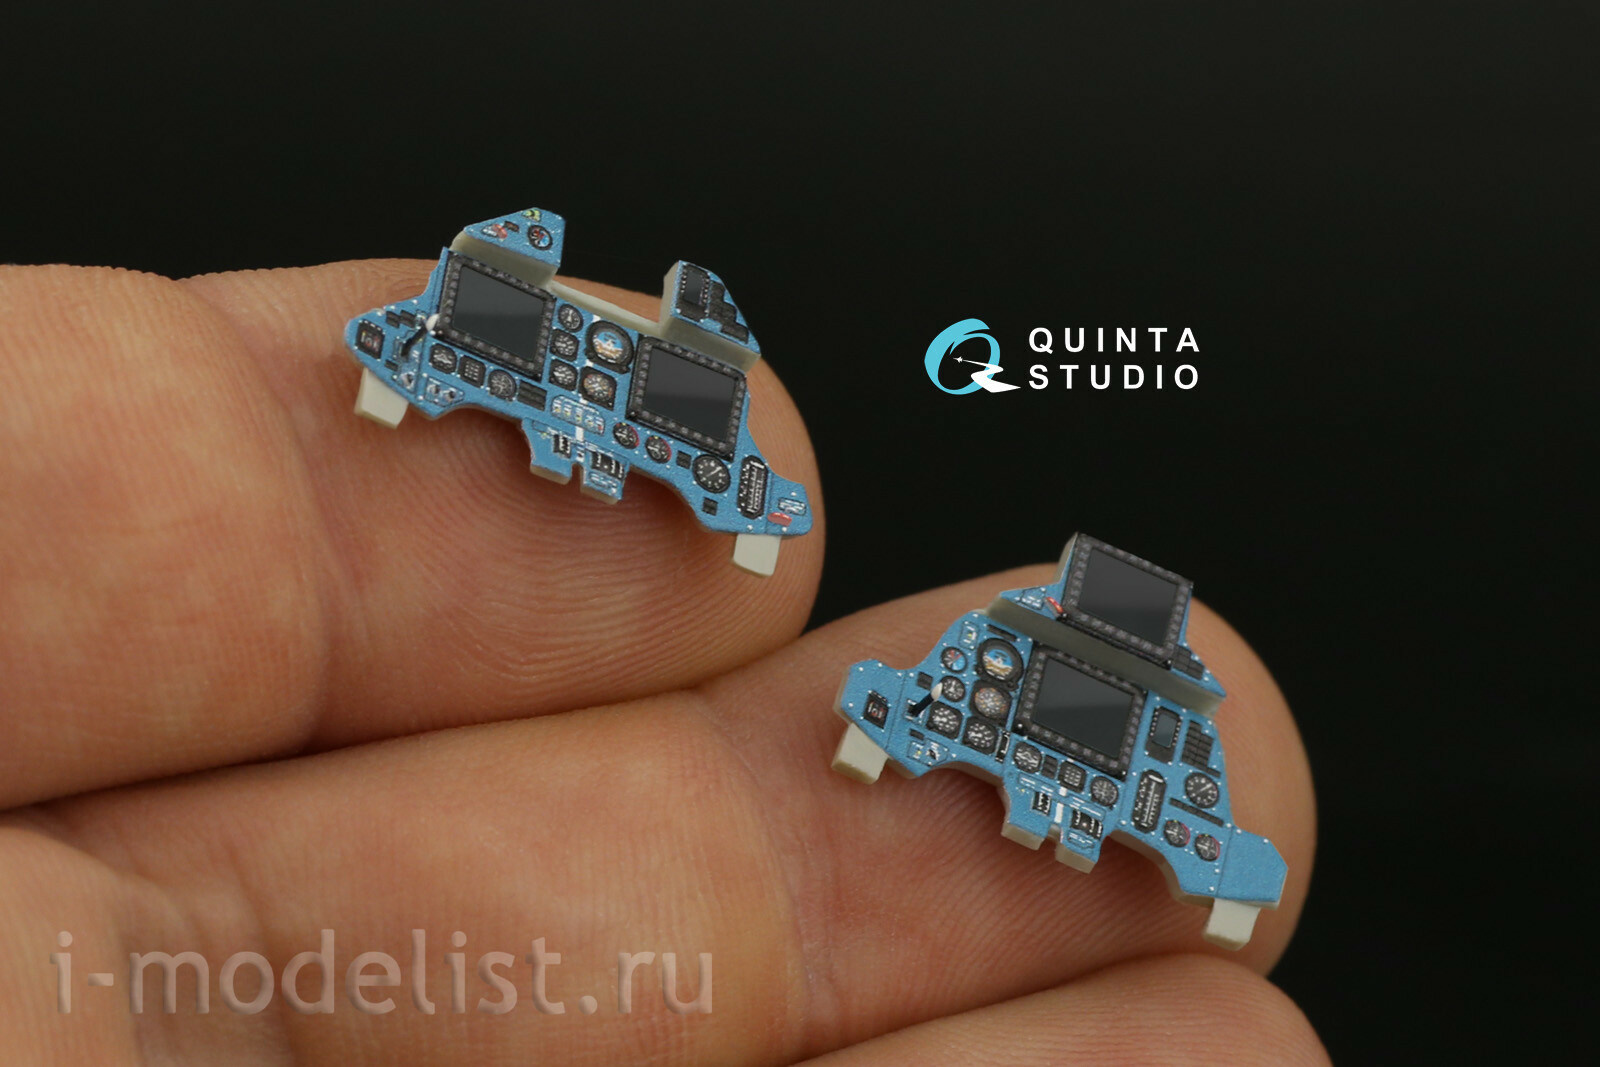 QD48212 Quinta Studio 1/48 3D Декаль интерьера кабины Суххой-30МКК (KittyHawk)